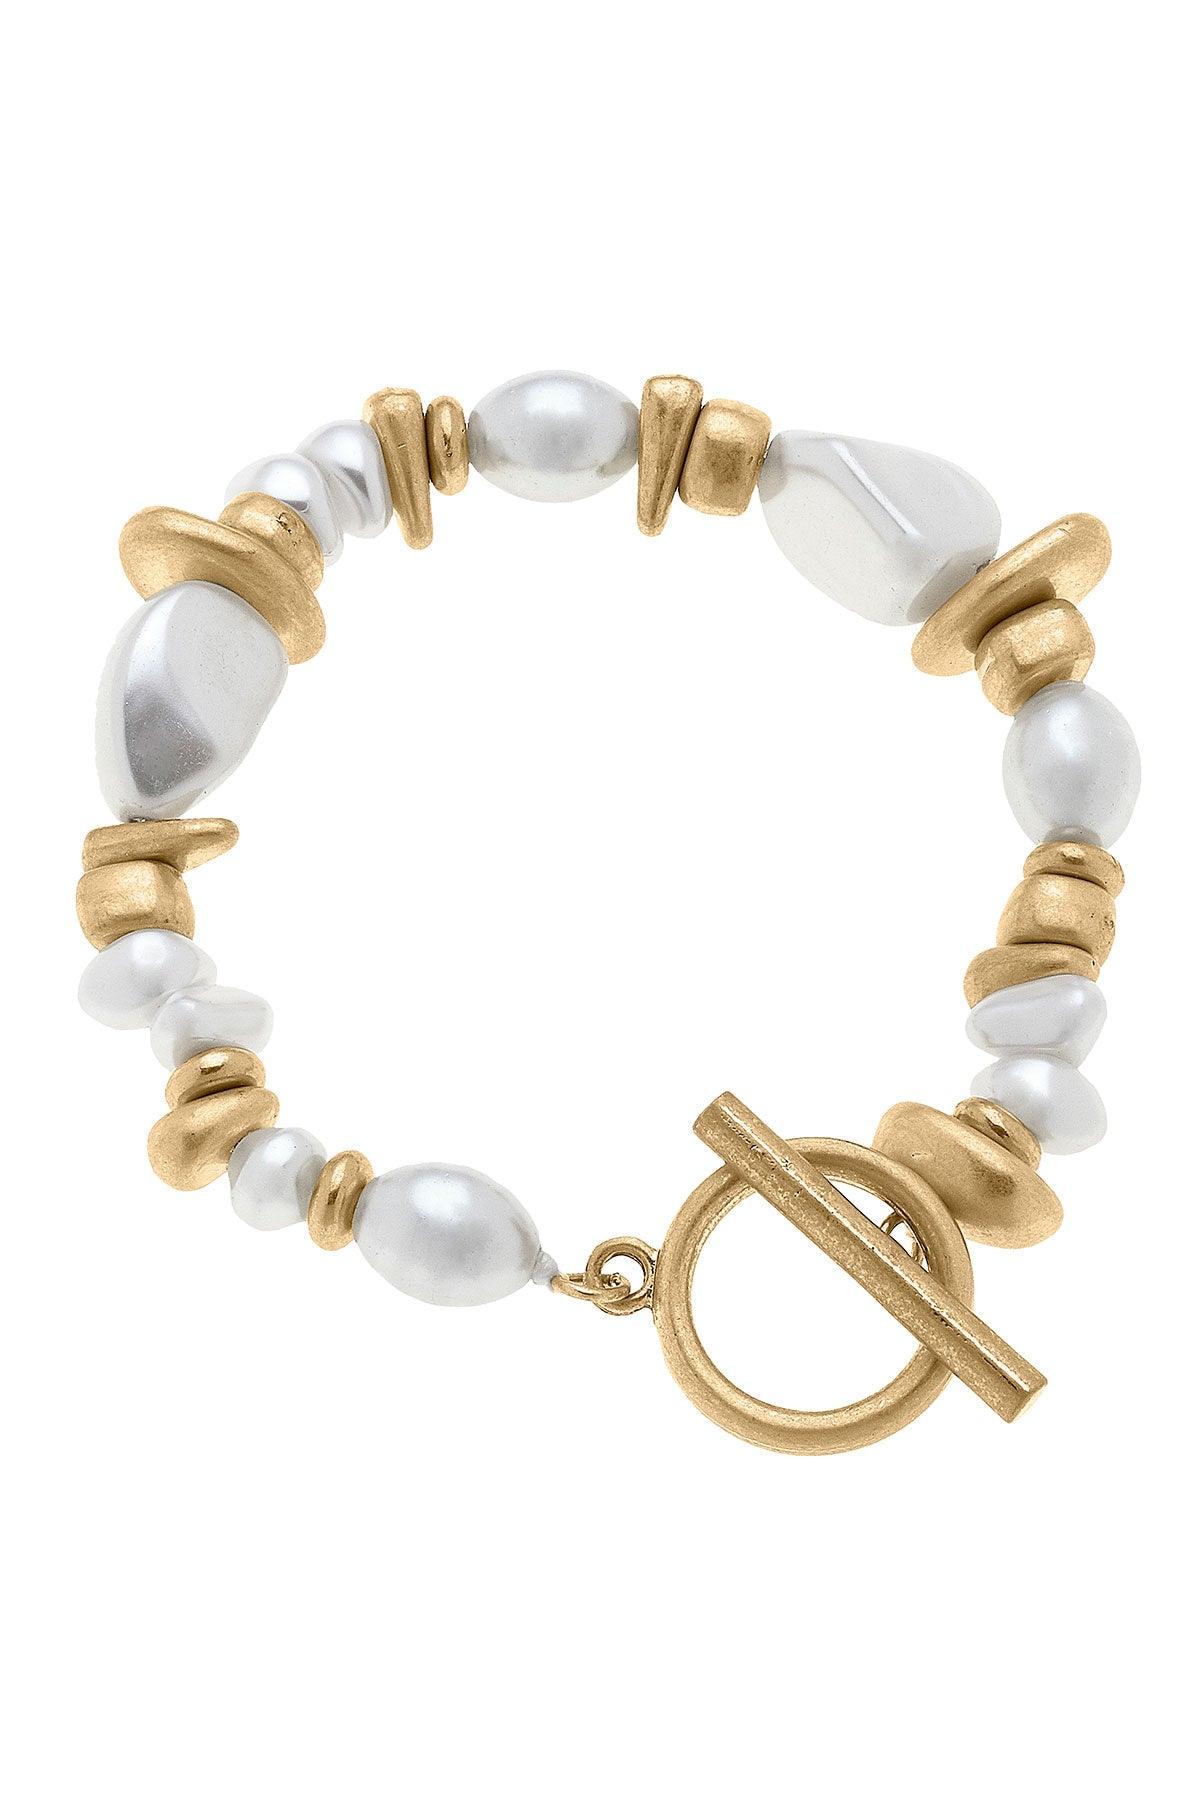 Parker gold & pearl bracelet